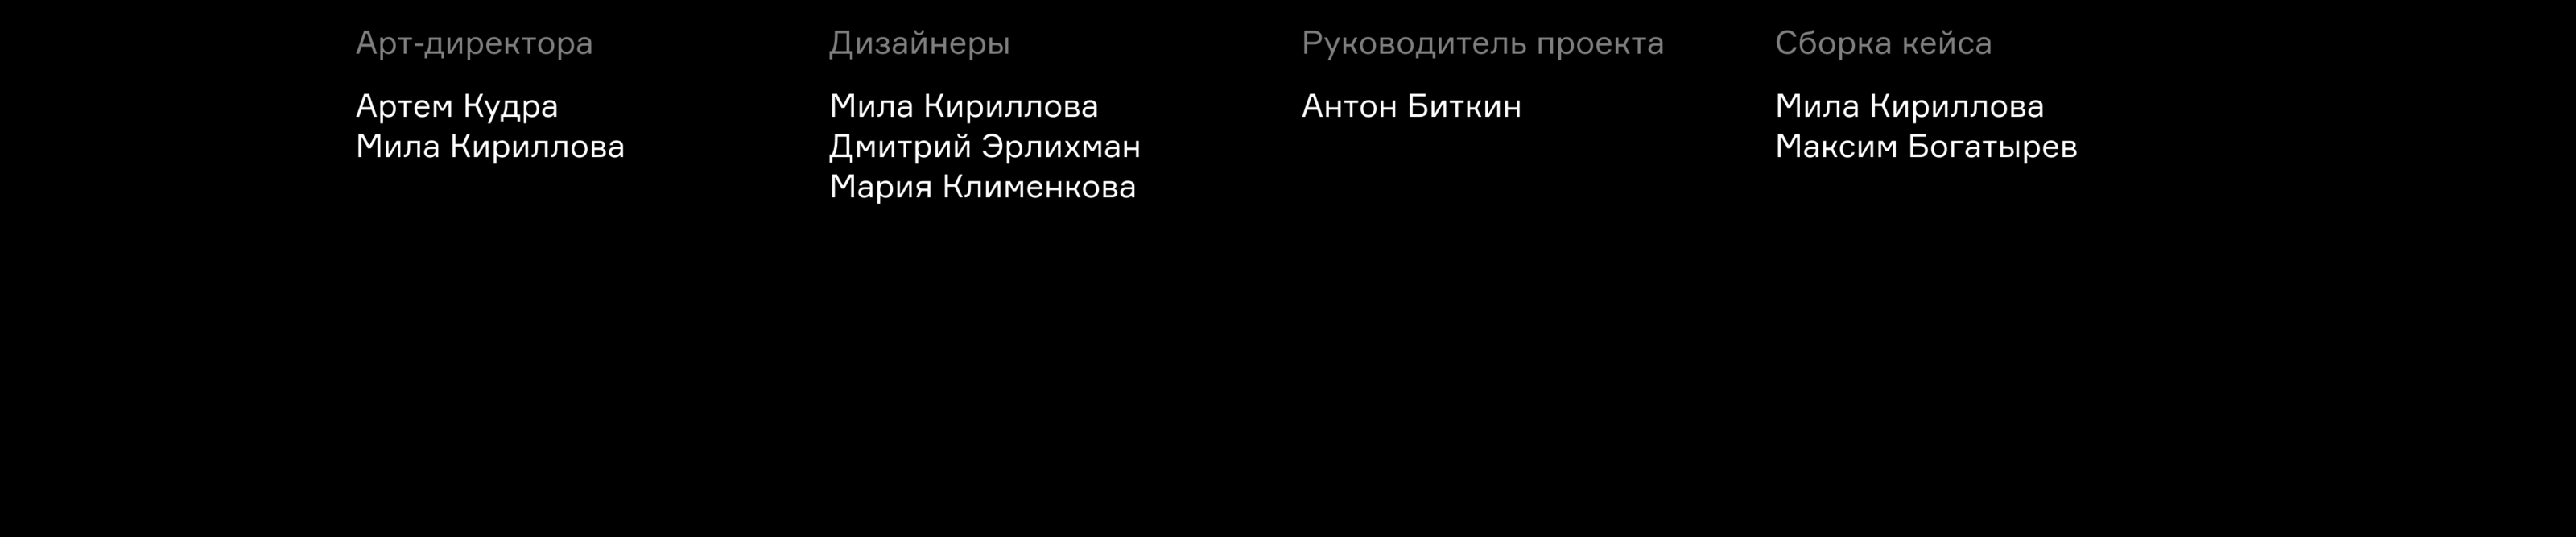 Дизайн основного сайта ХК «Юнисон-Москва» — Изображение №22 — Интерфейсы на Dprofile